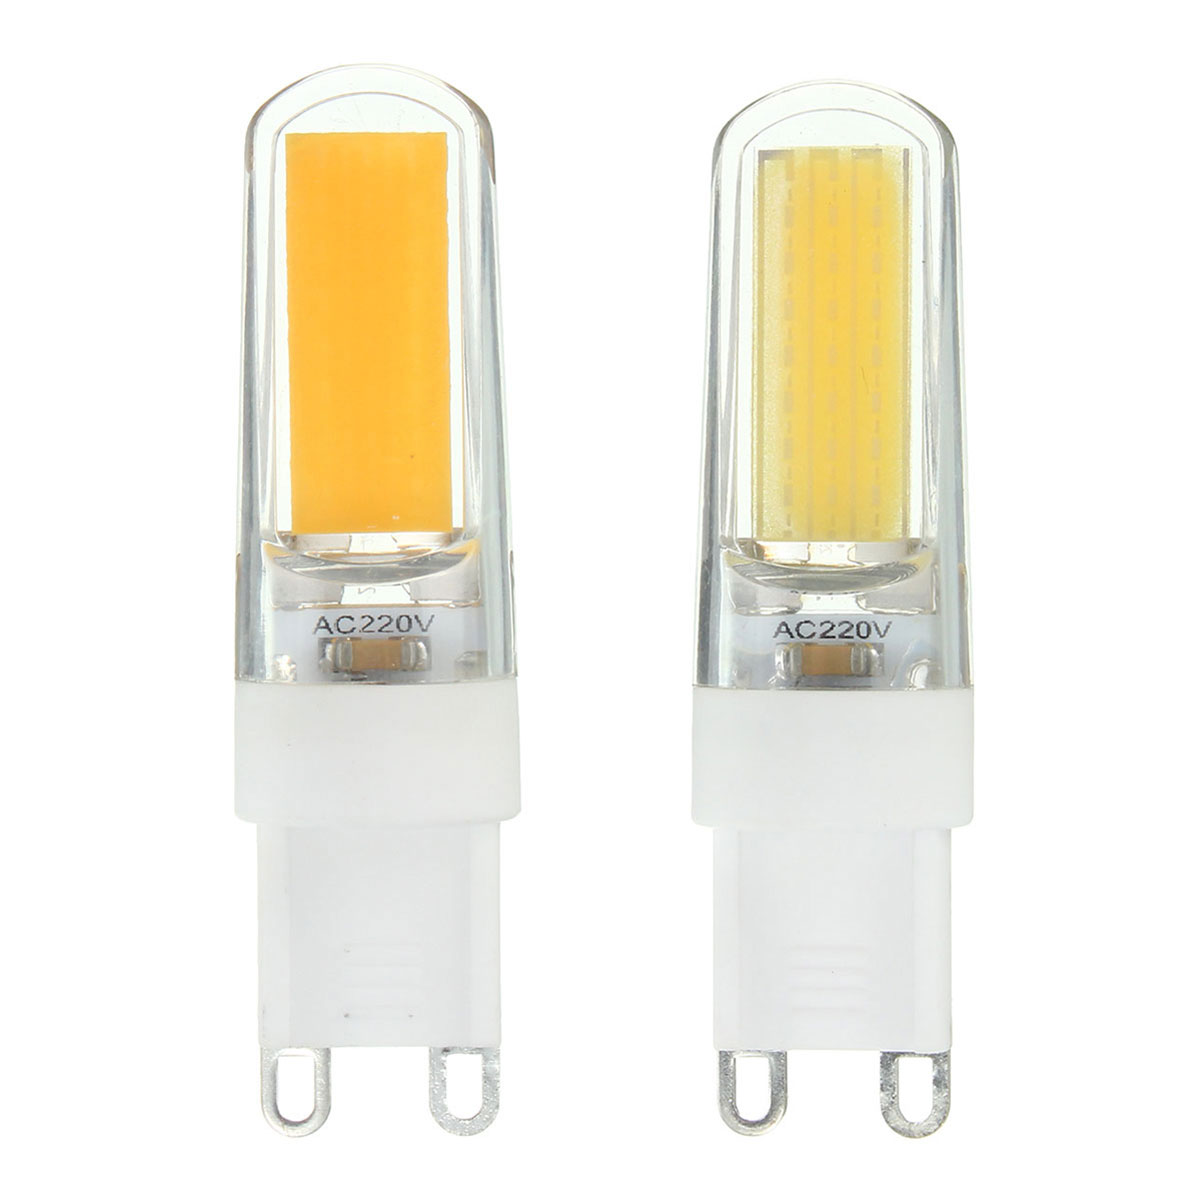 G9-LED-3W-Pure-White-Warm-White-COB-LED-PC-Material-Light-Lamp-Bulb-AC220V-1062195-6